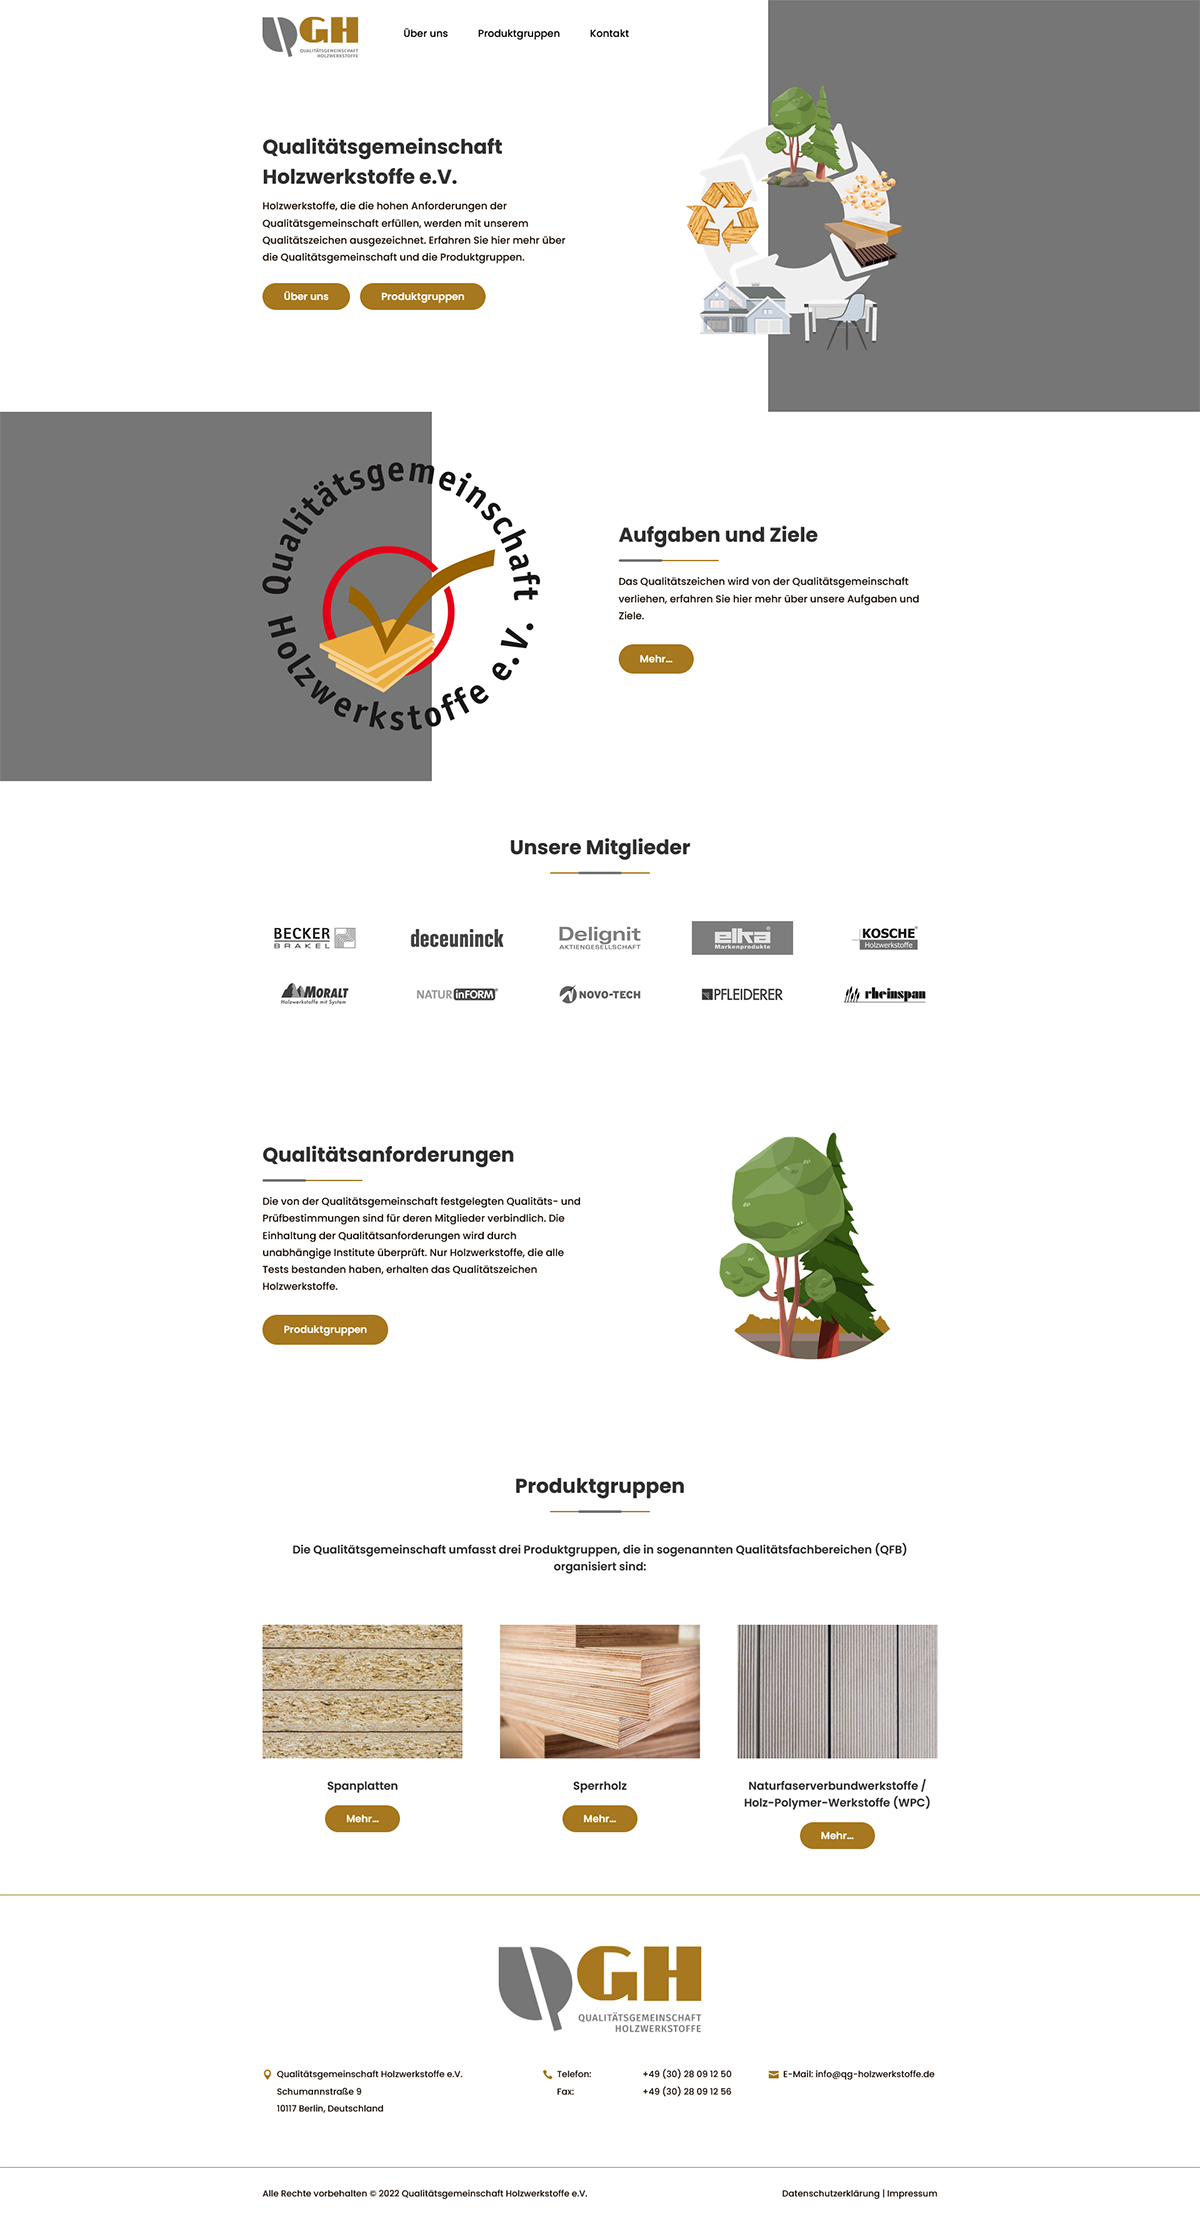 Das Bild zeigt die Webseite der Qualitätsgemeinschaft Holzwerkstoffe als Desktopansicht.